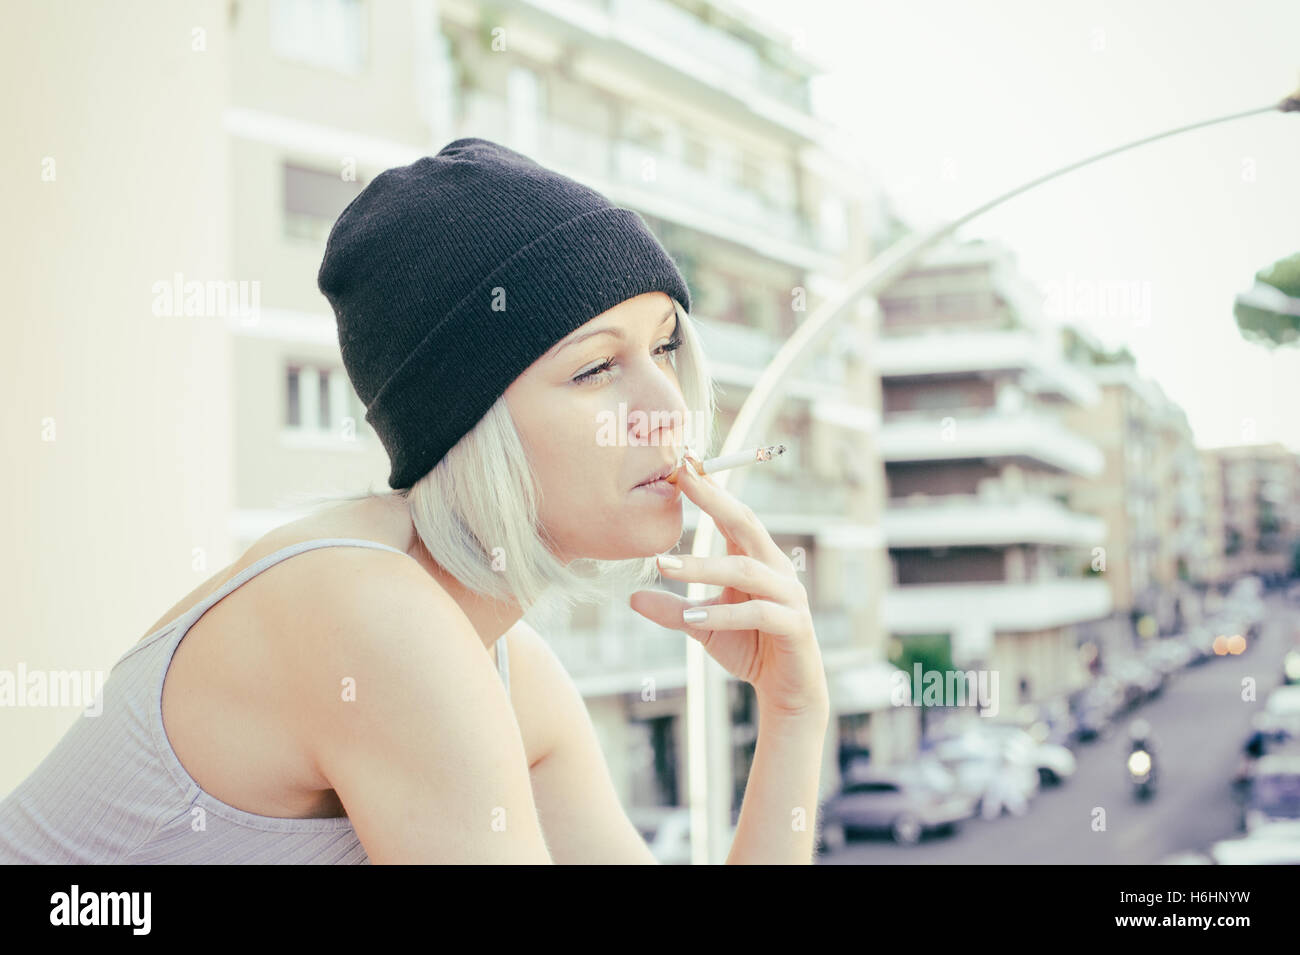 Junge Teen Frau rauchen Zigaretten und lächelnd mit urbanen Straßenbild im Hintergrund, Vintage Farbwirkung im freien Stockfoto